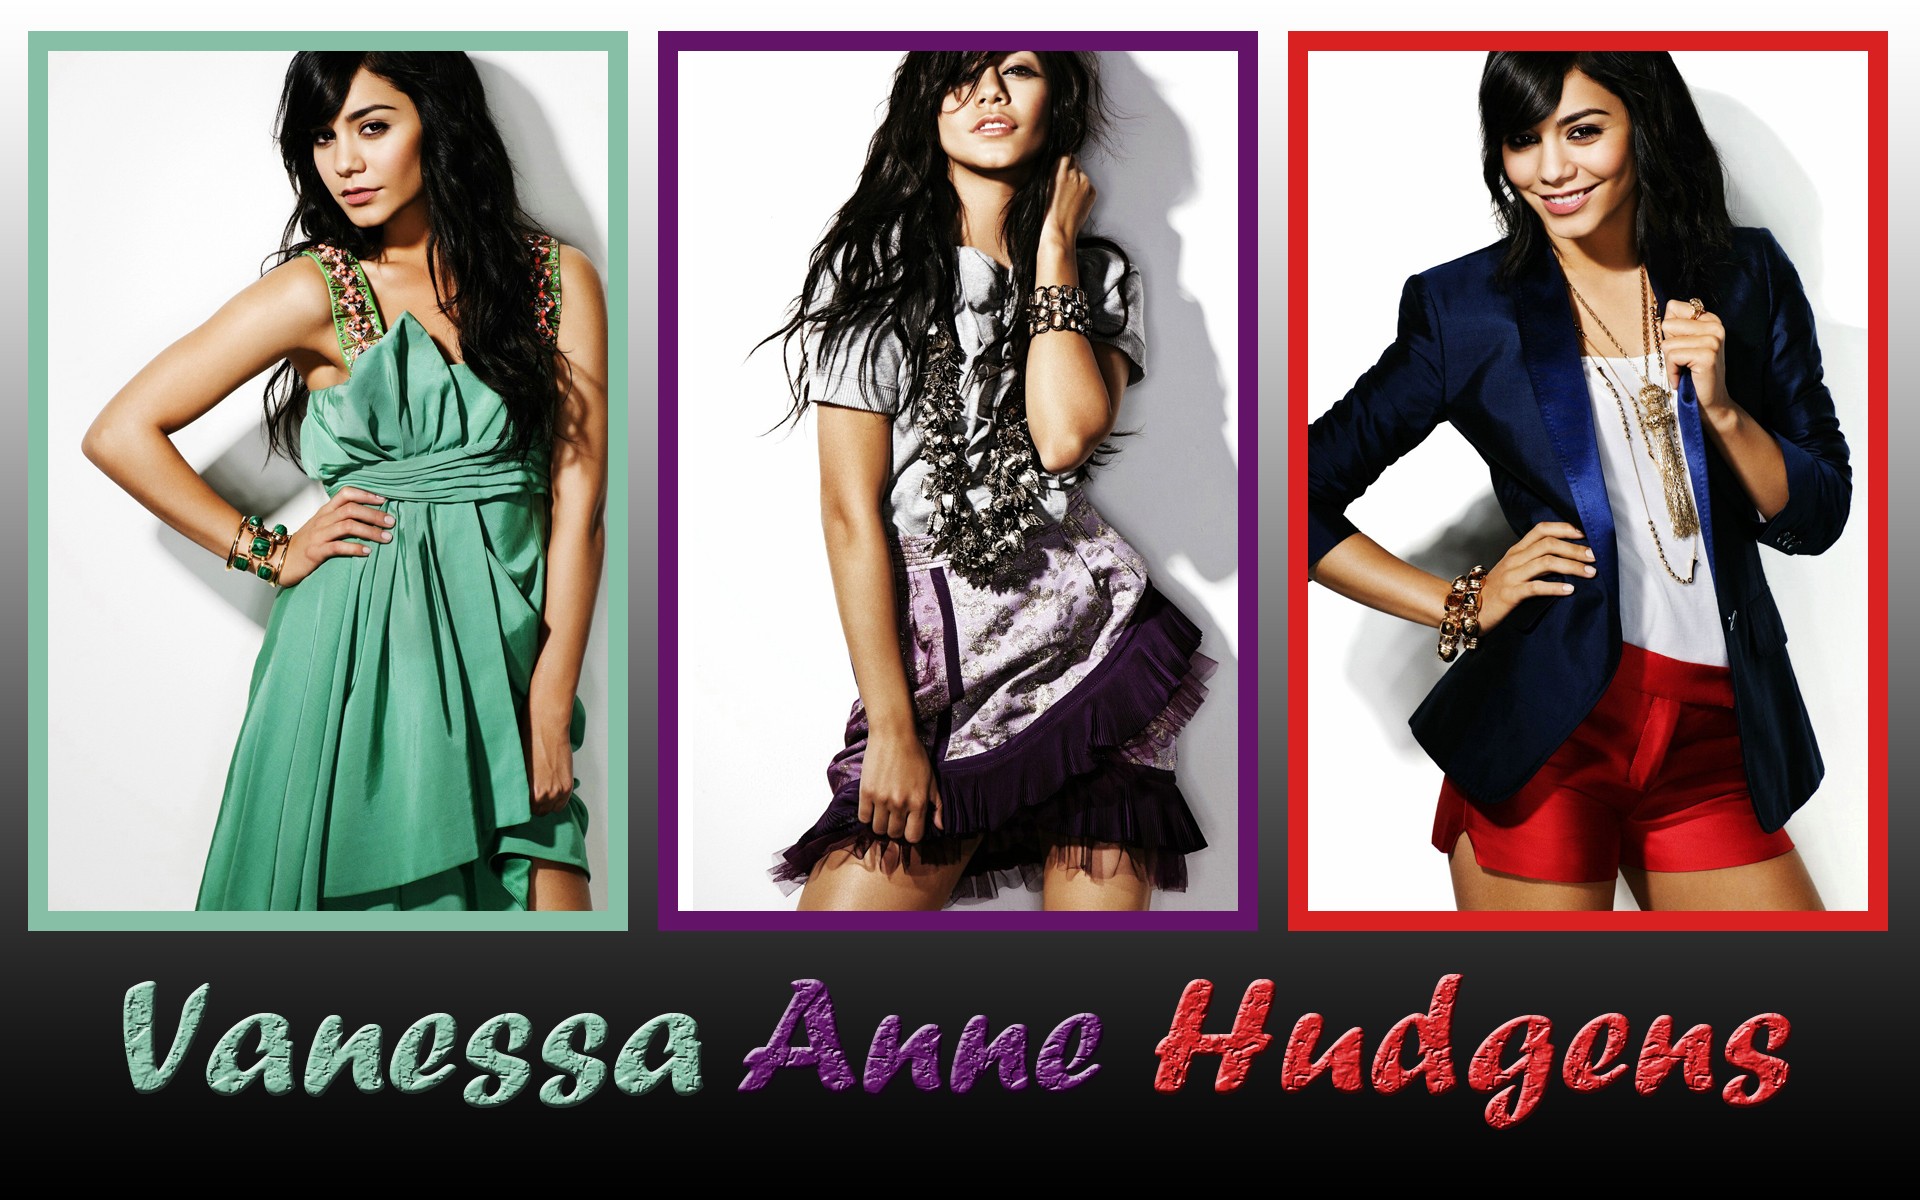 brunettes, women, actress, celebrity, Vanessa Hudgens - desktop wallpaper